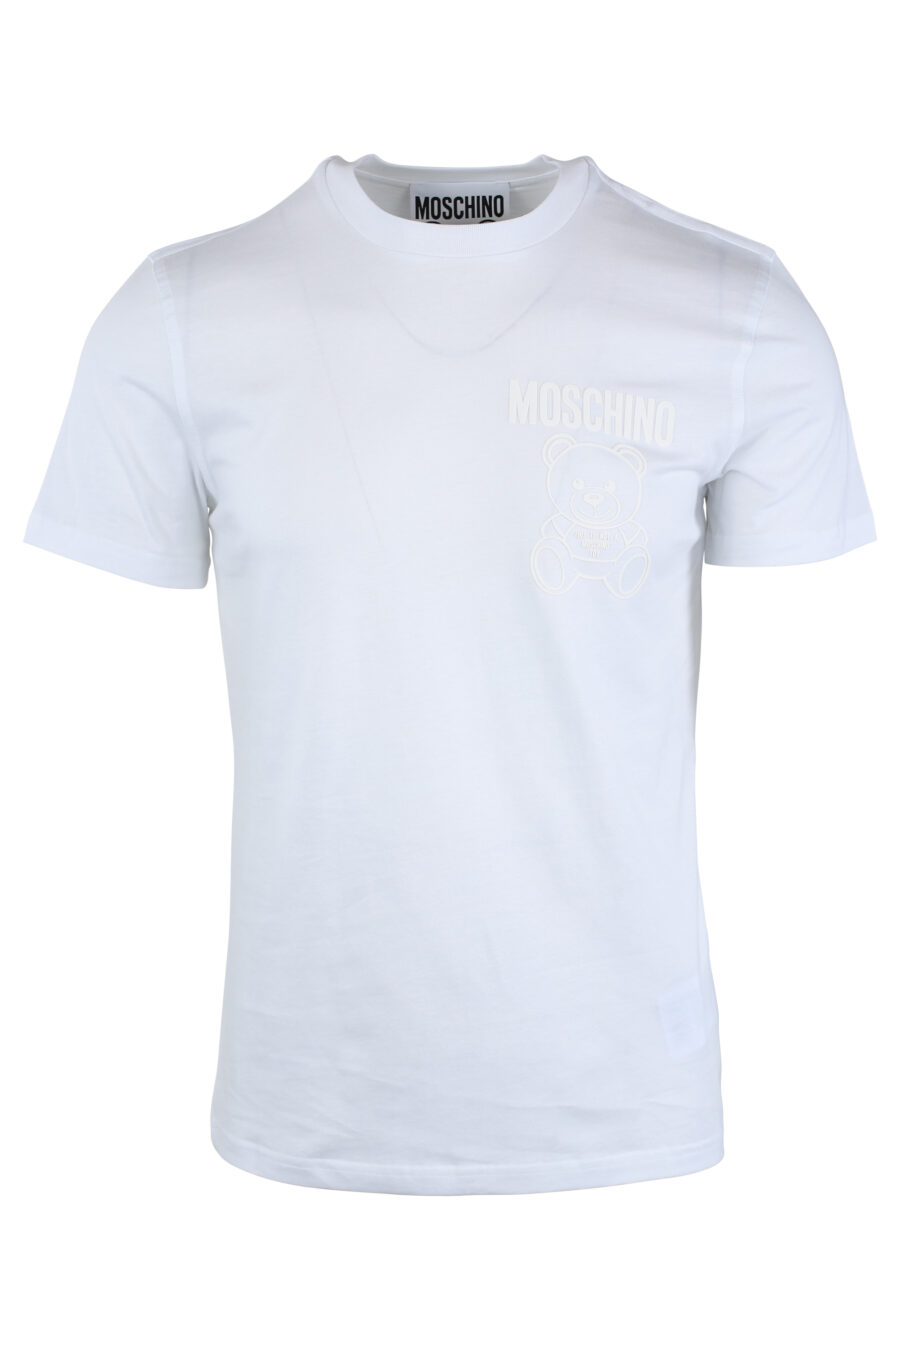 T-shirt branca com minilogo de urso monocromático - IMG 1649